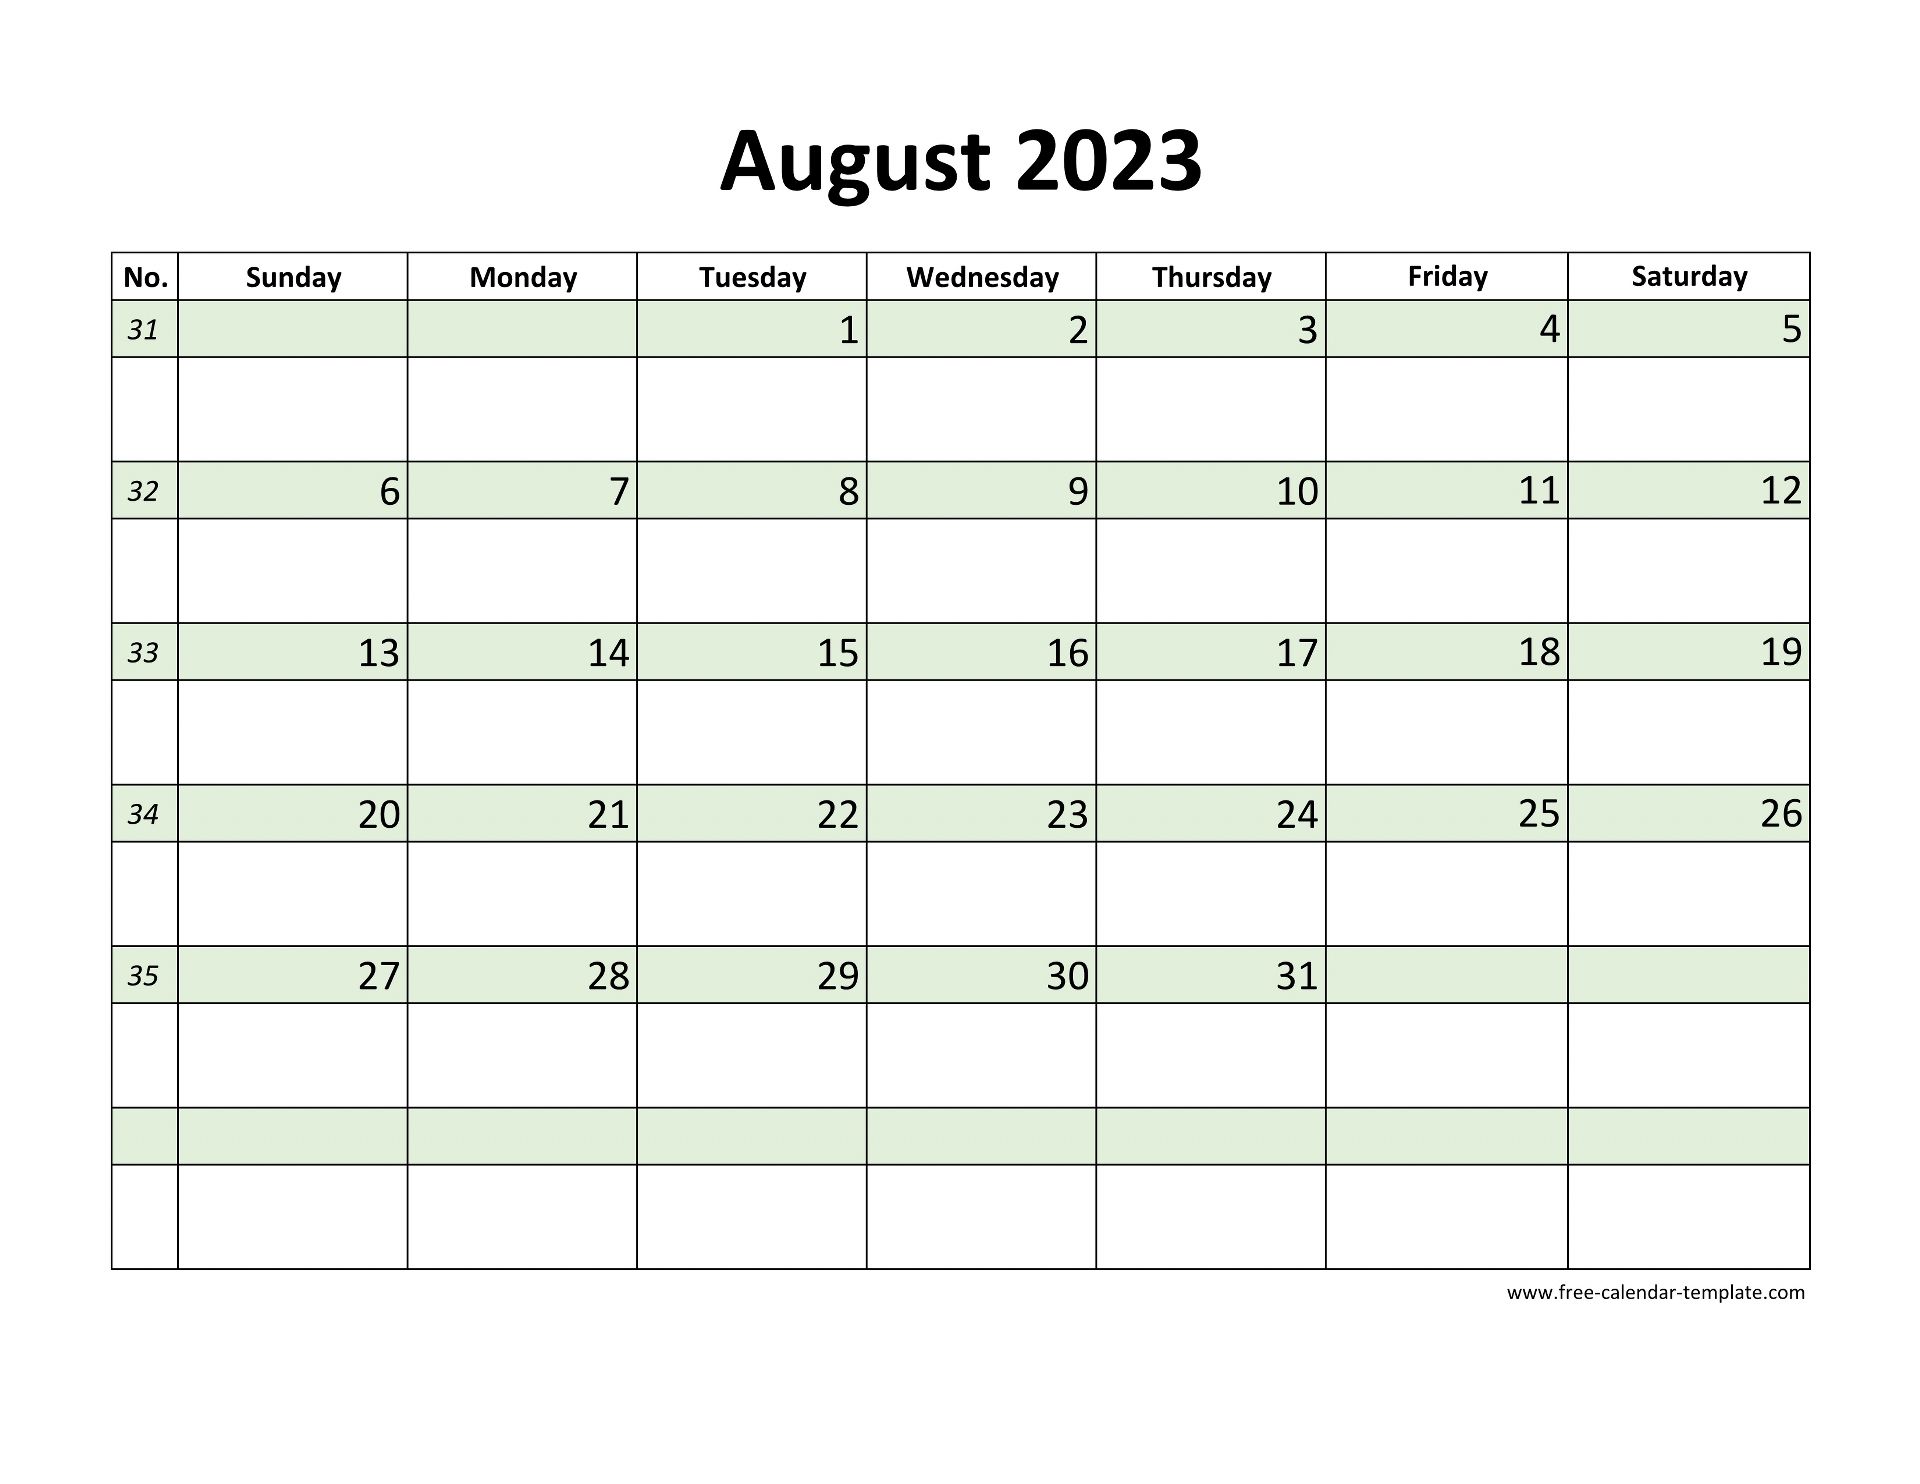 august-2023-calendar-template-bank2home